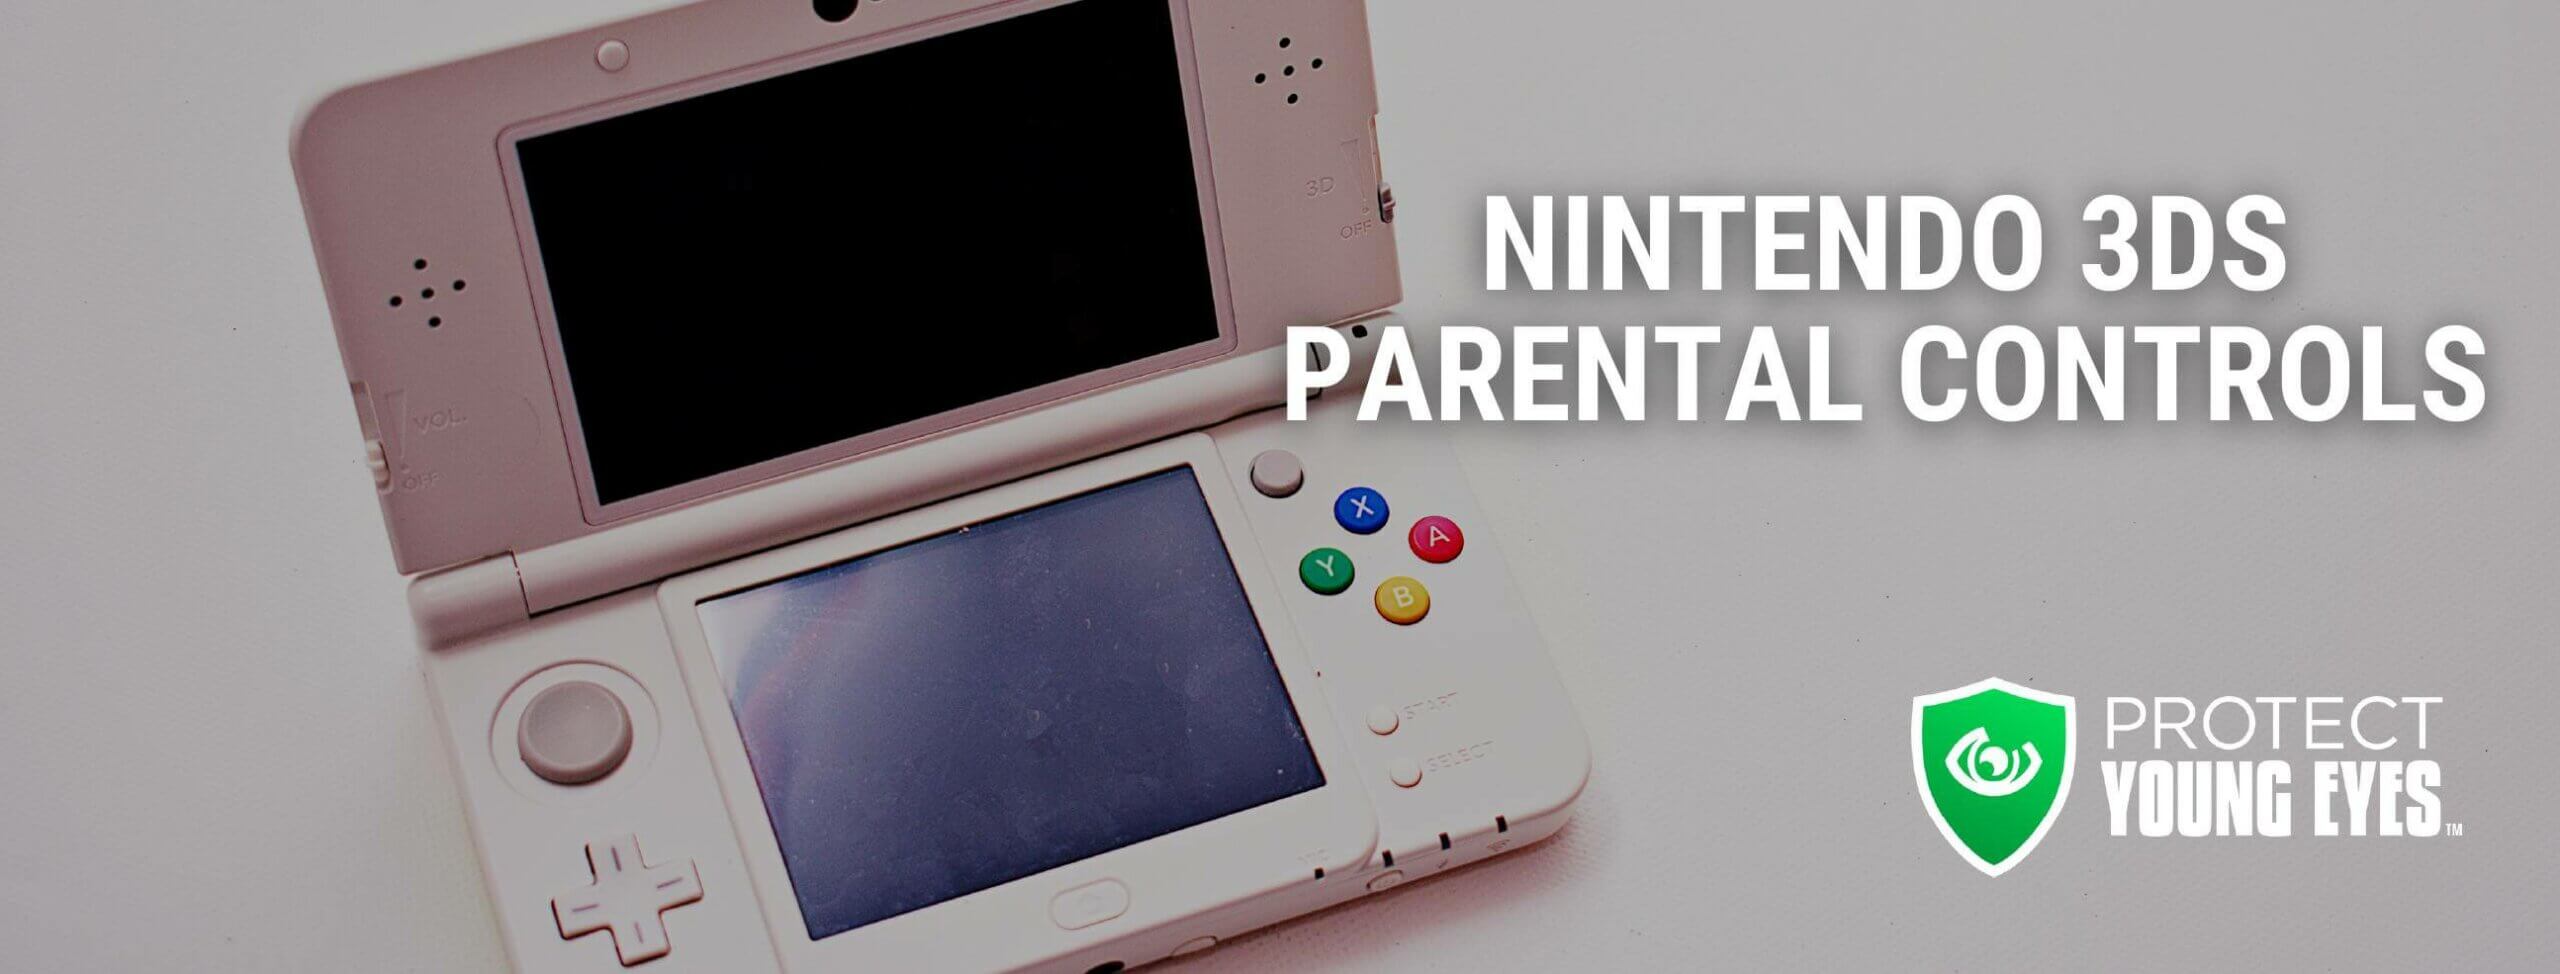 Nintendo 3DS Parental Control Review Header